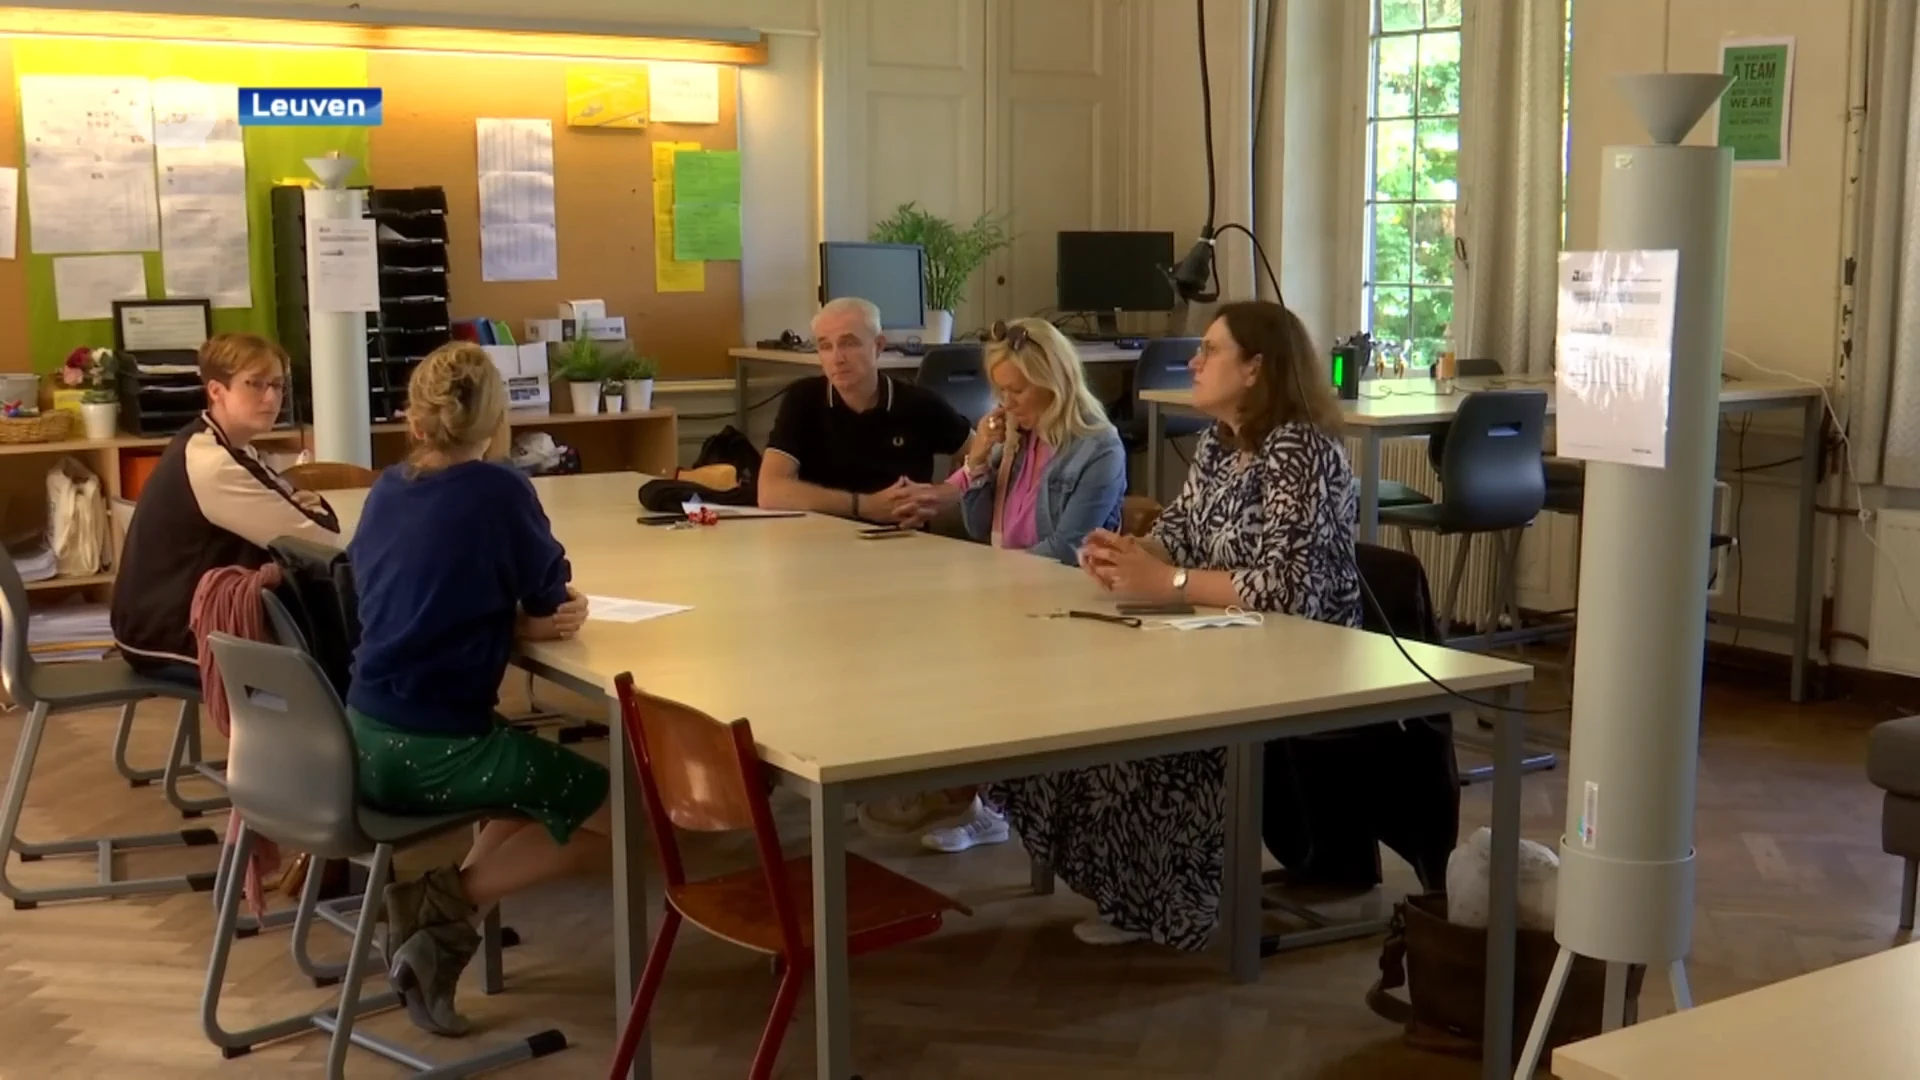 Nieuw schooljaar, ook voor leerkrachten: leraarskamer van Paridaens in Leuven omgebouwd tot 'virusvrije ruimte'